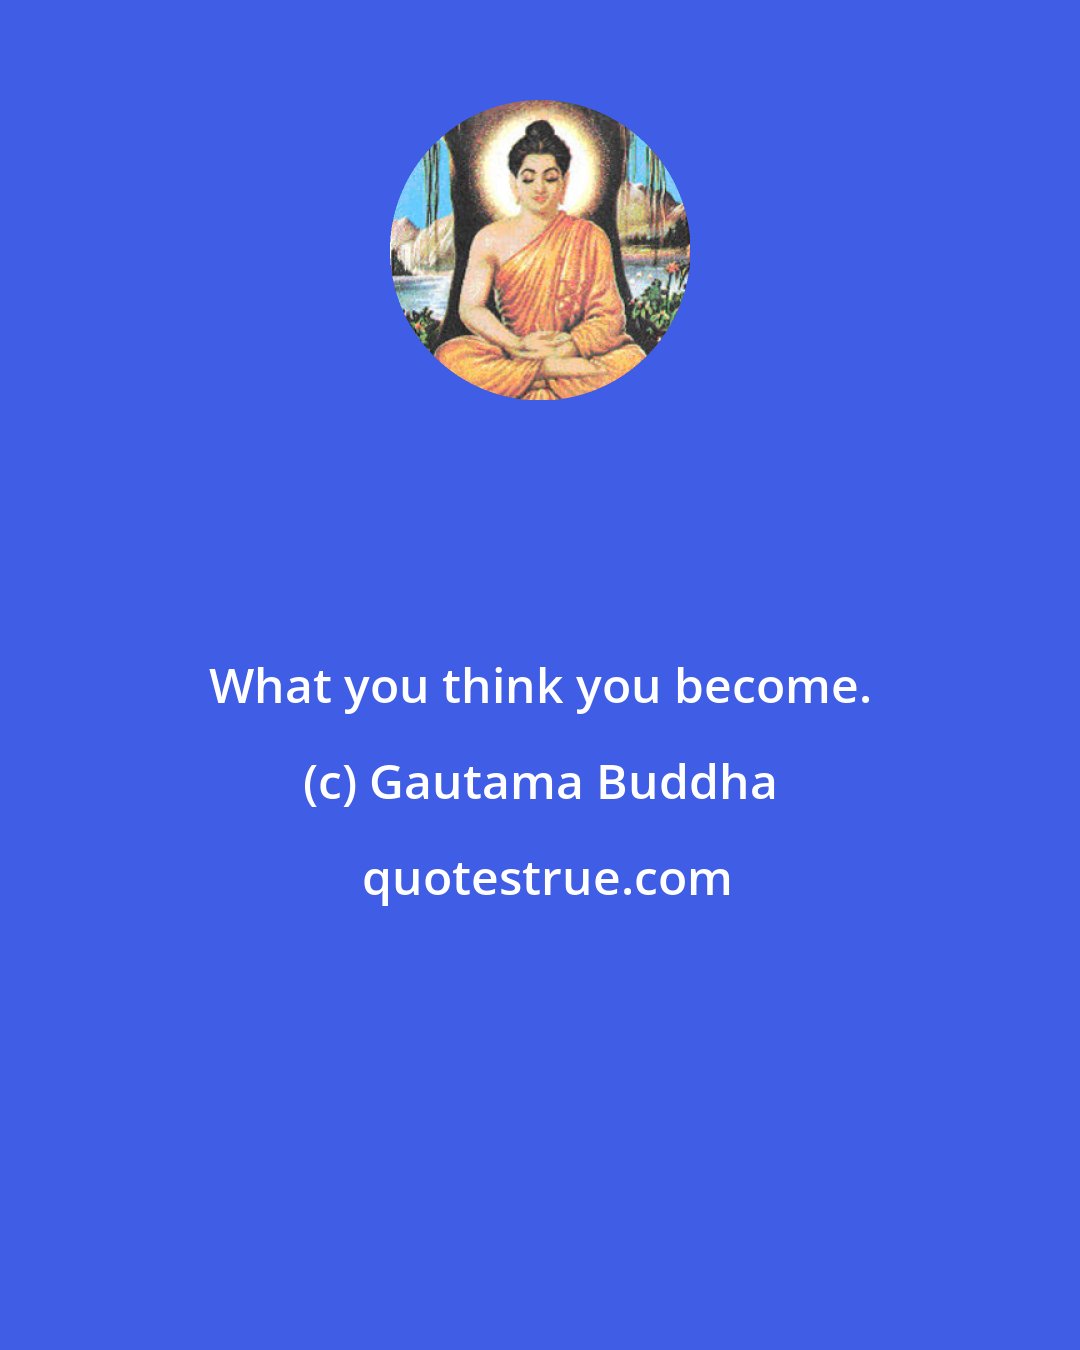 Gautama Buddha: What you think you become.